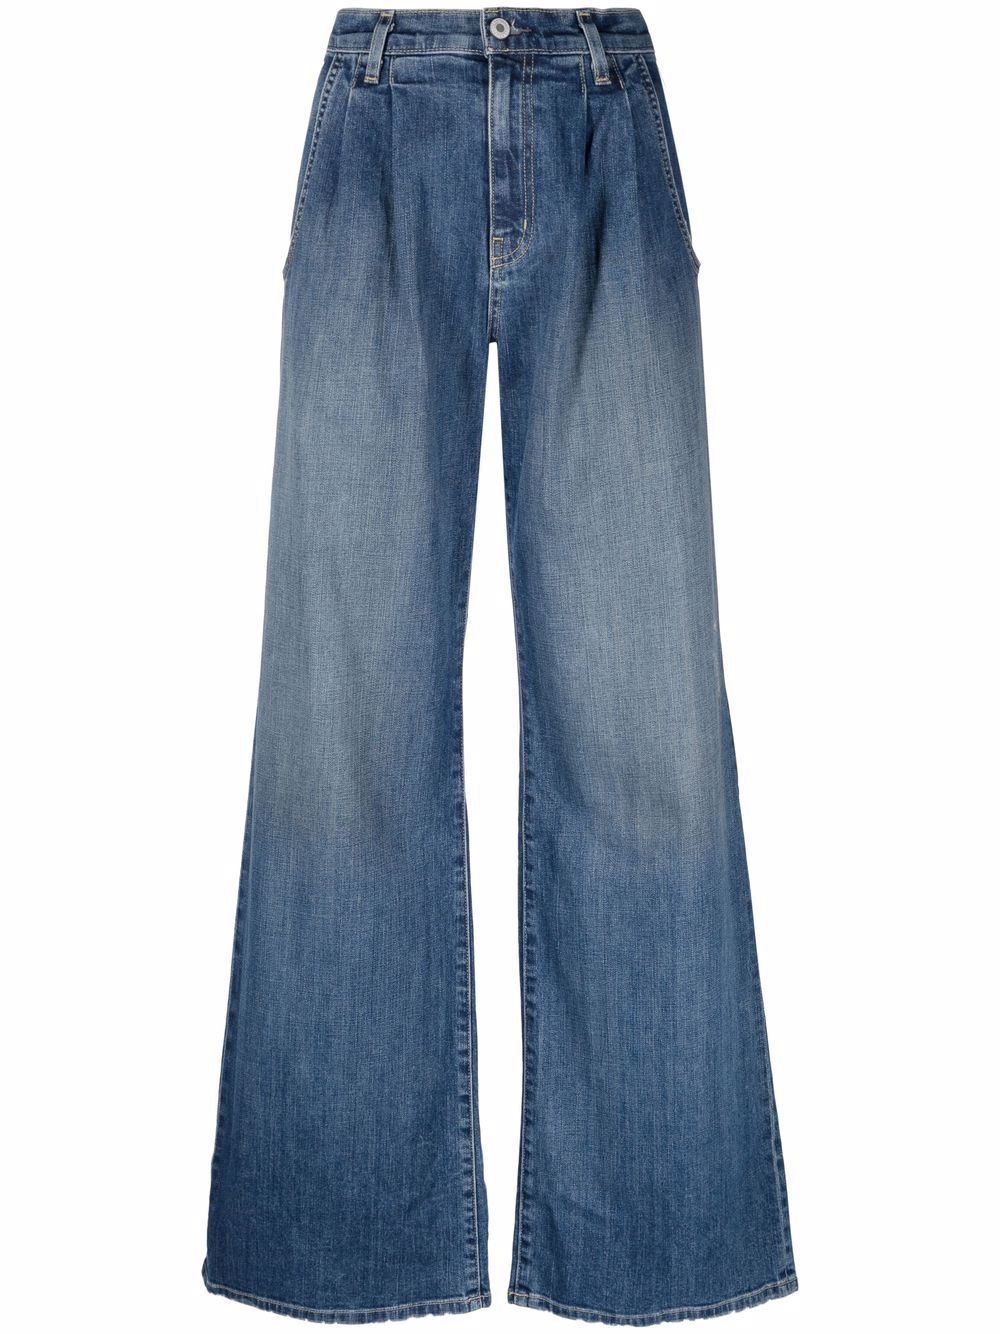 Flora Trouser Jean in Classic Wash